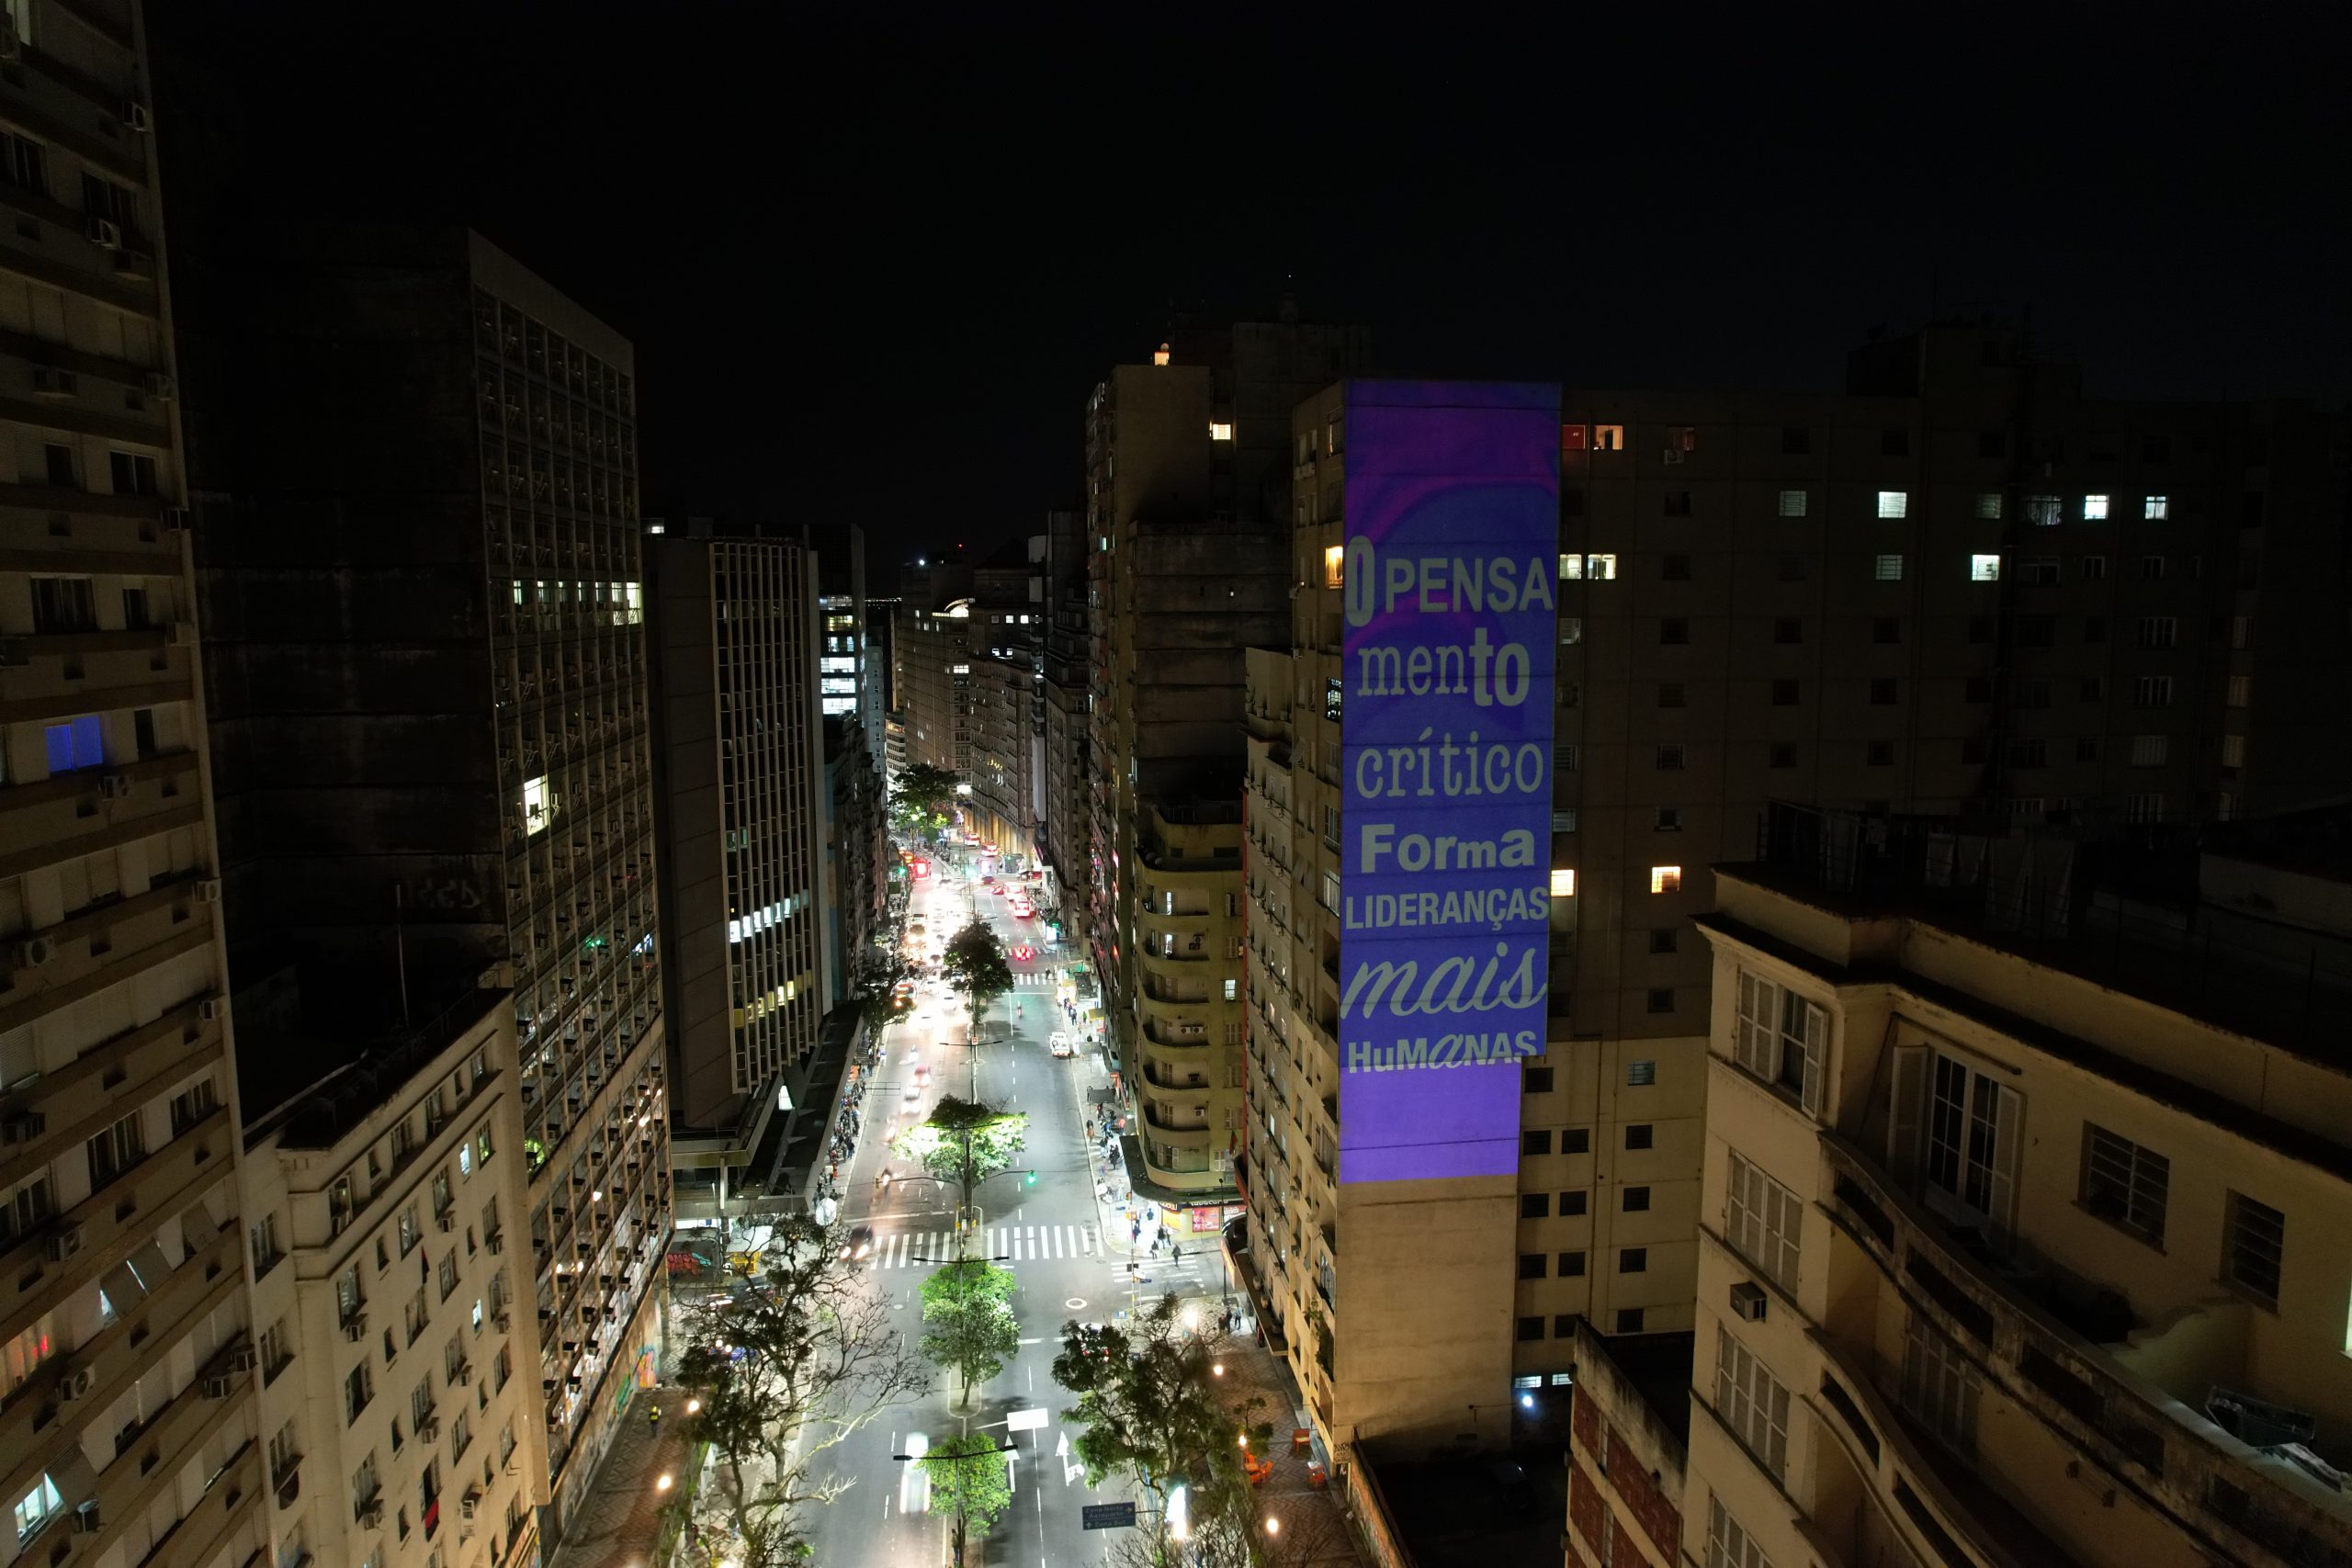 Ação de intervenção urbana da Unisinos em Porto Alegre convida comunidade a refletir sobre temas da sociedade